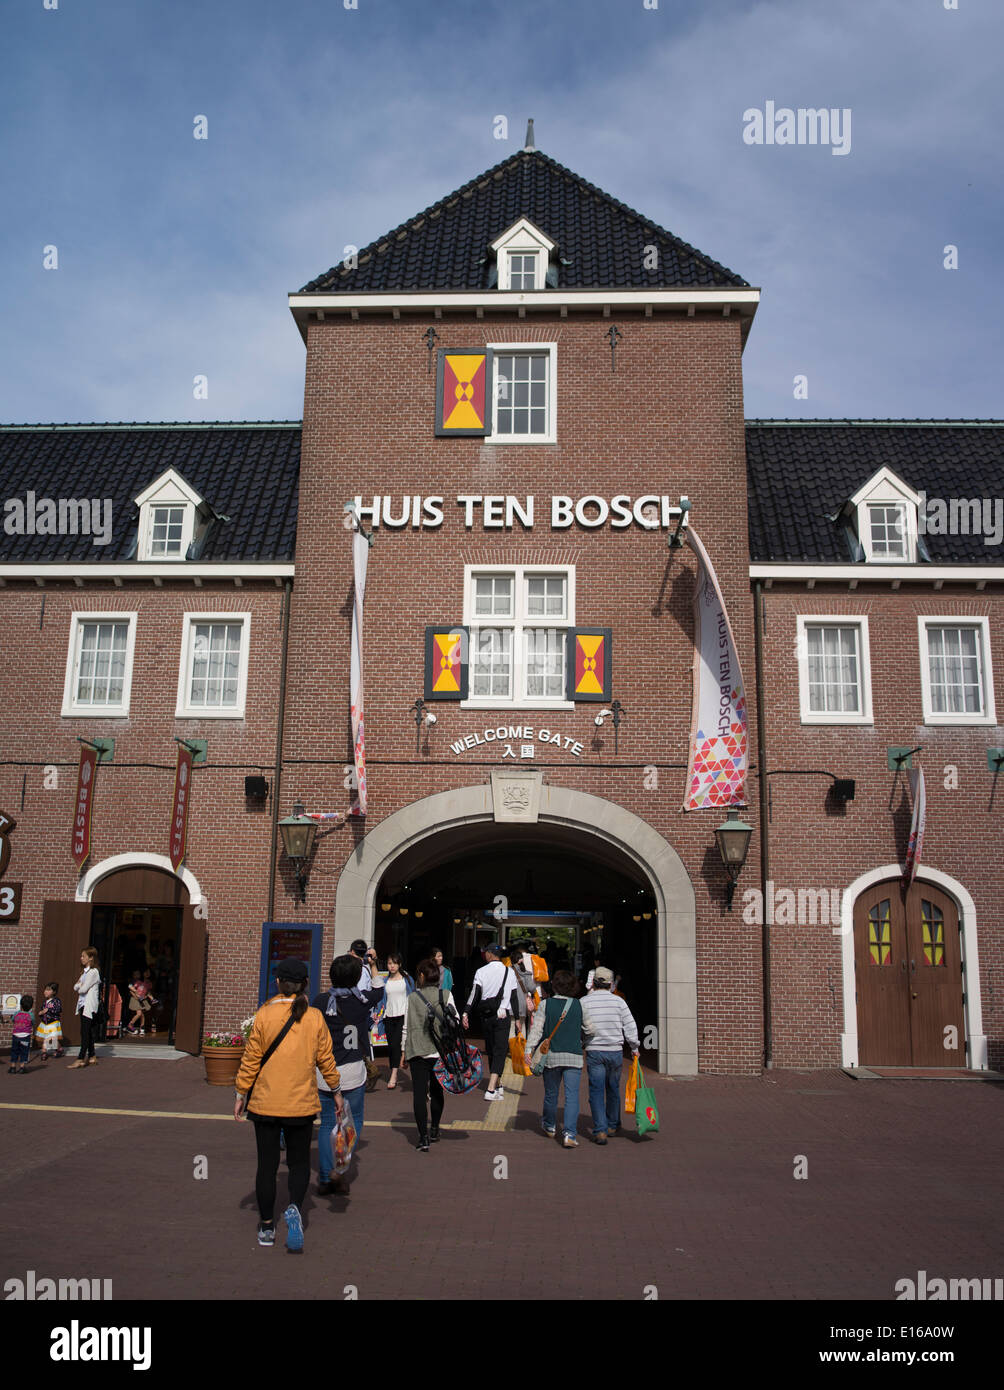 Huis ten Bosch, un parque temático en Sasebo, Nagasaki, Japón. Recrea Holanda y edificios holandeses. Foto de stock